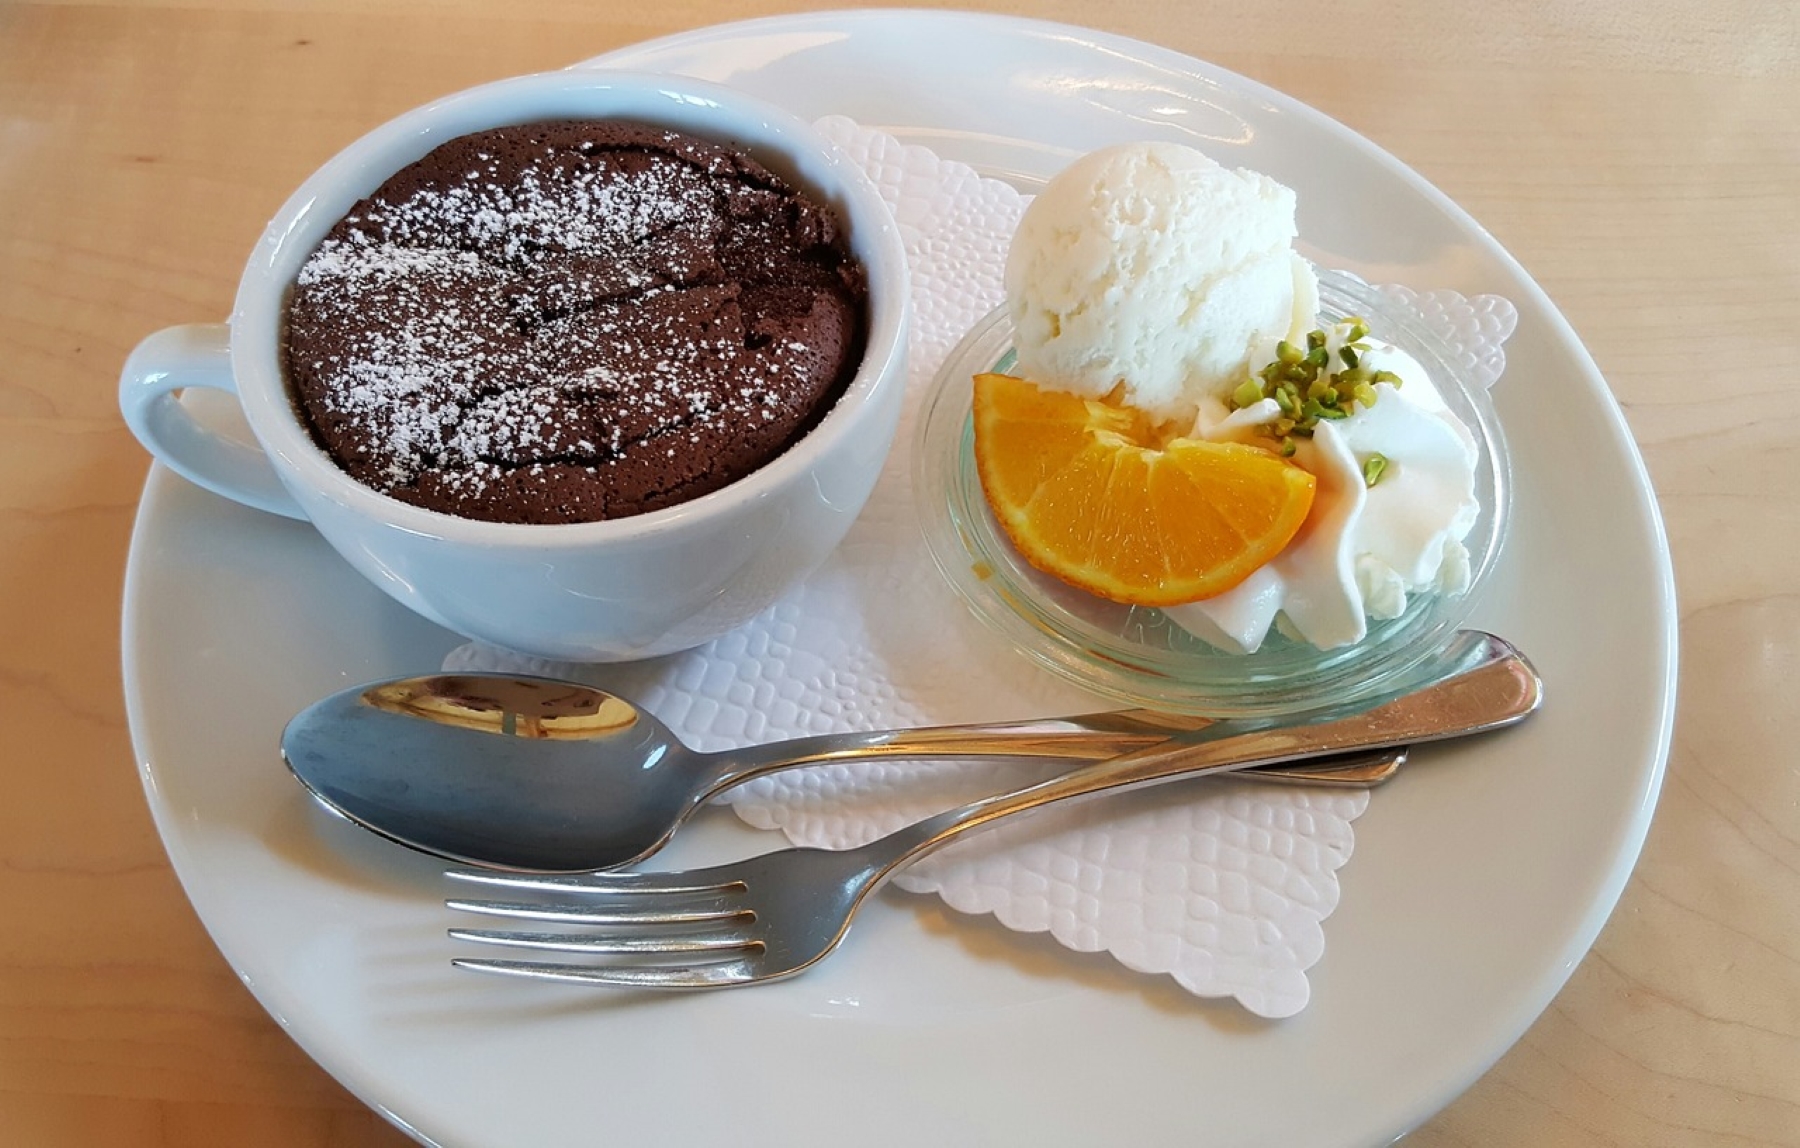 Σοκολατόπιτα σε κούπα: Ένα γρήγορο και λαχταριστό γλυκάκι